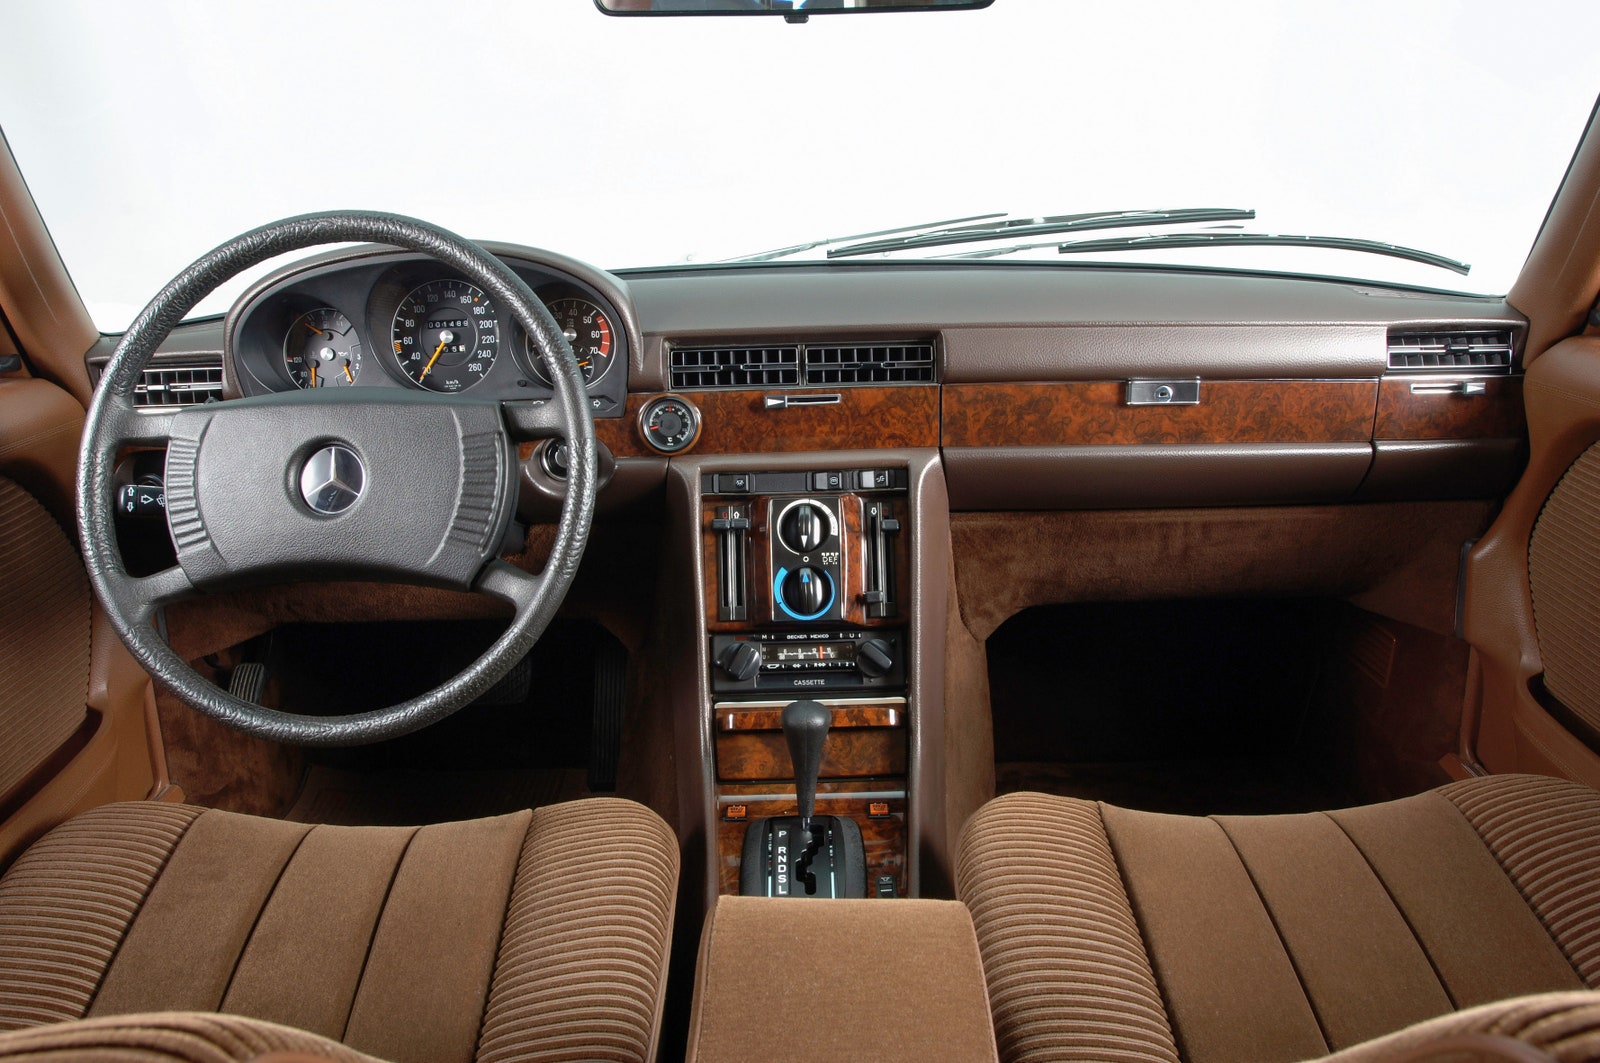 Mercedes-Benz 450 SEL 6.9 1975-1980